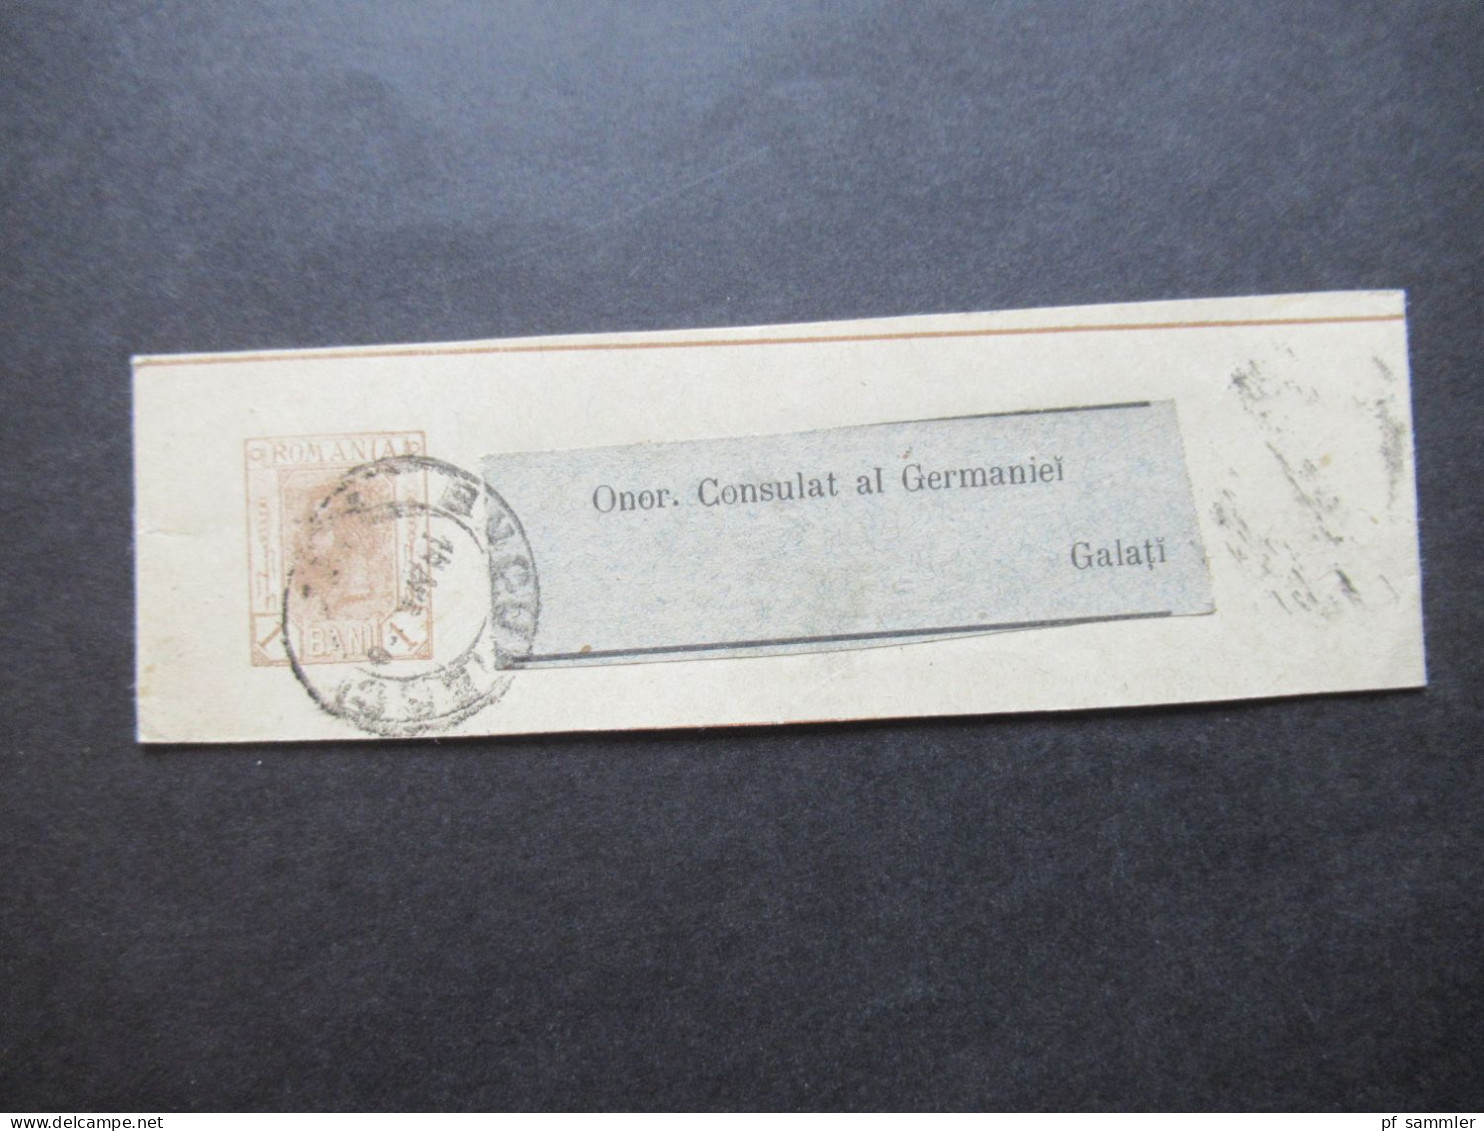 Rumänien 1899 Ganzsachen / 2x Streifband mit Adressaufkleber Onor. Consulat al Germaniei Galati